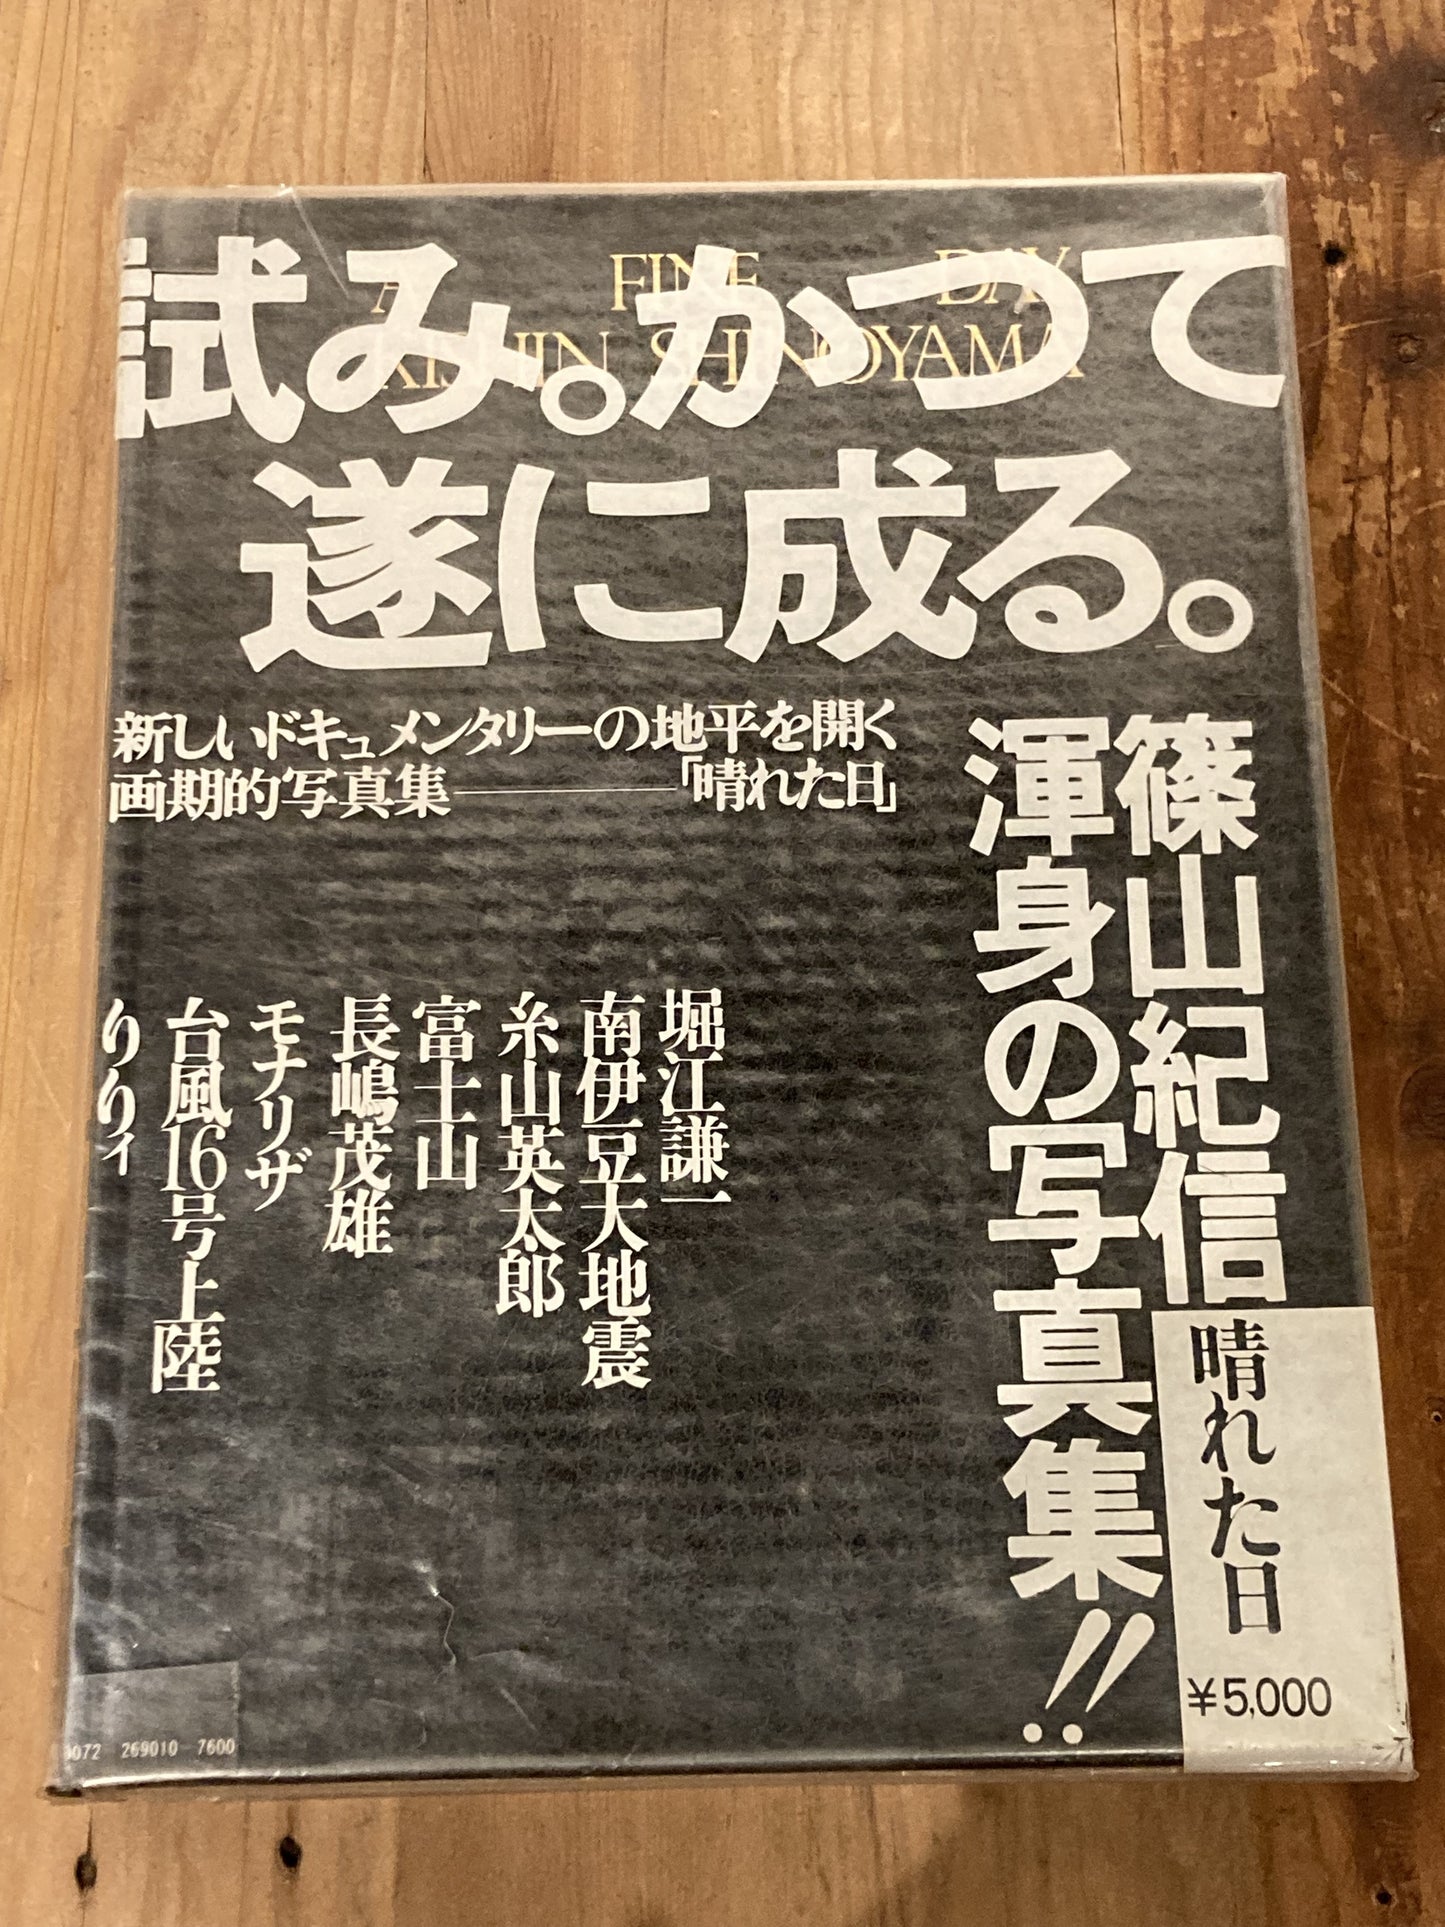 [Private] BOOK84 A Fine Day Kishin Shinoyama